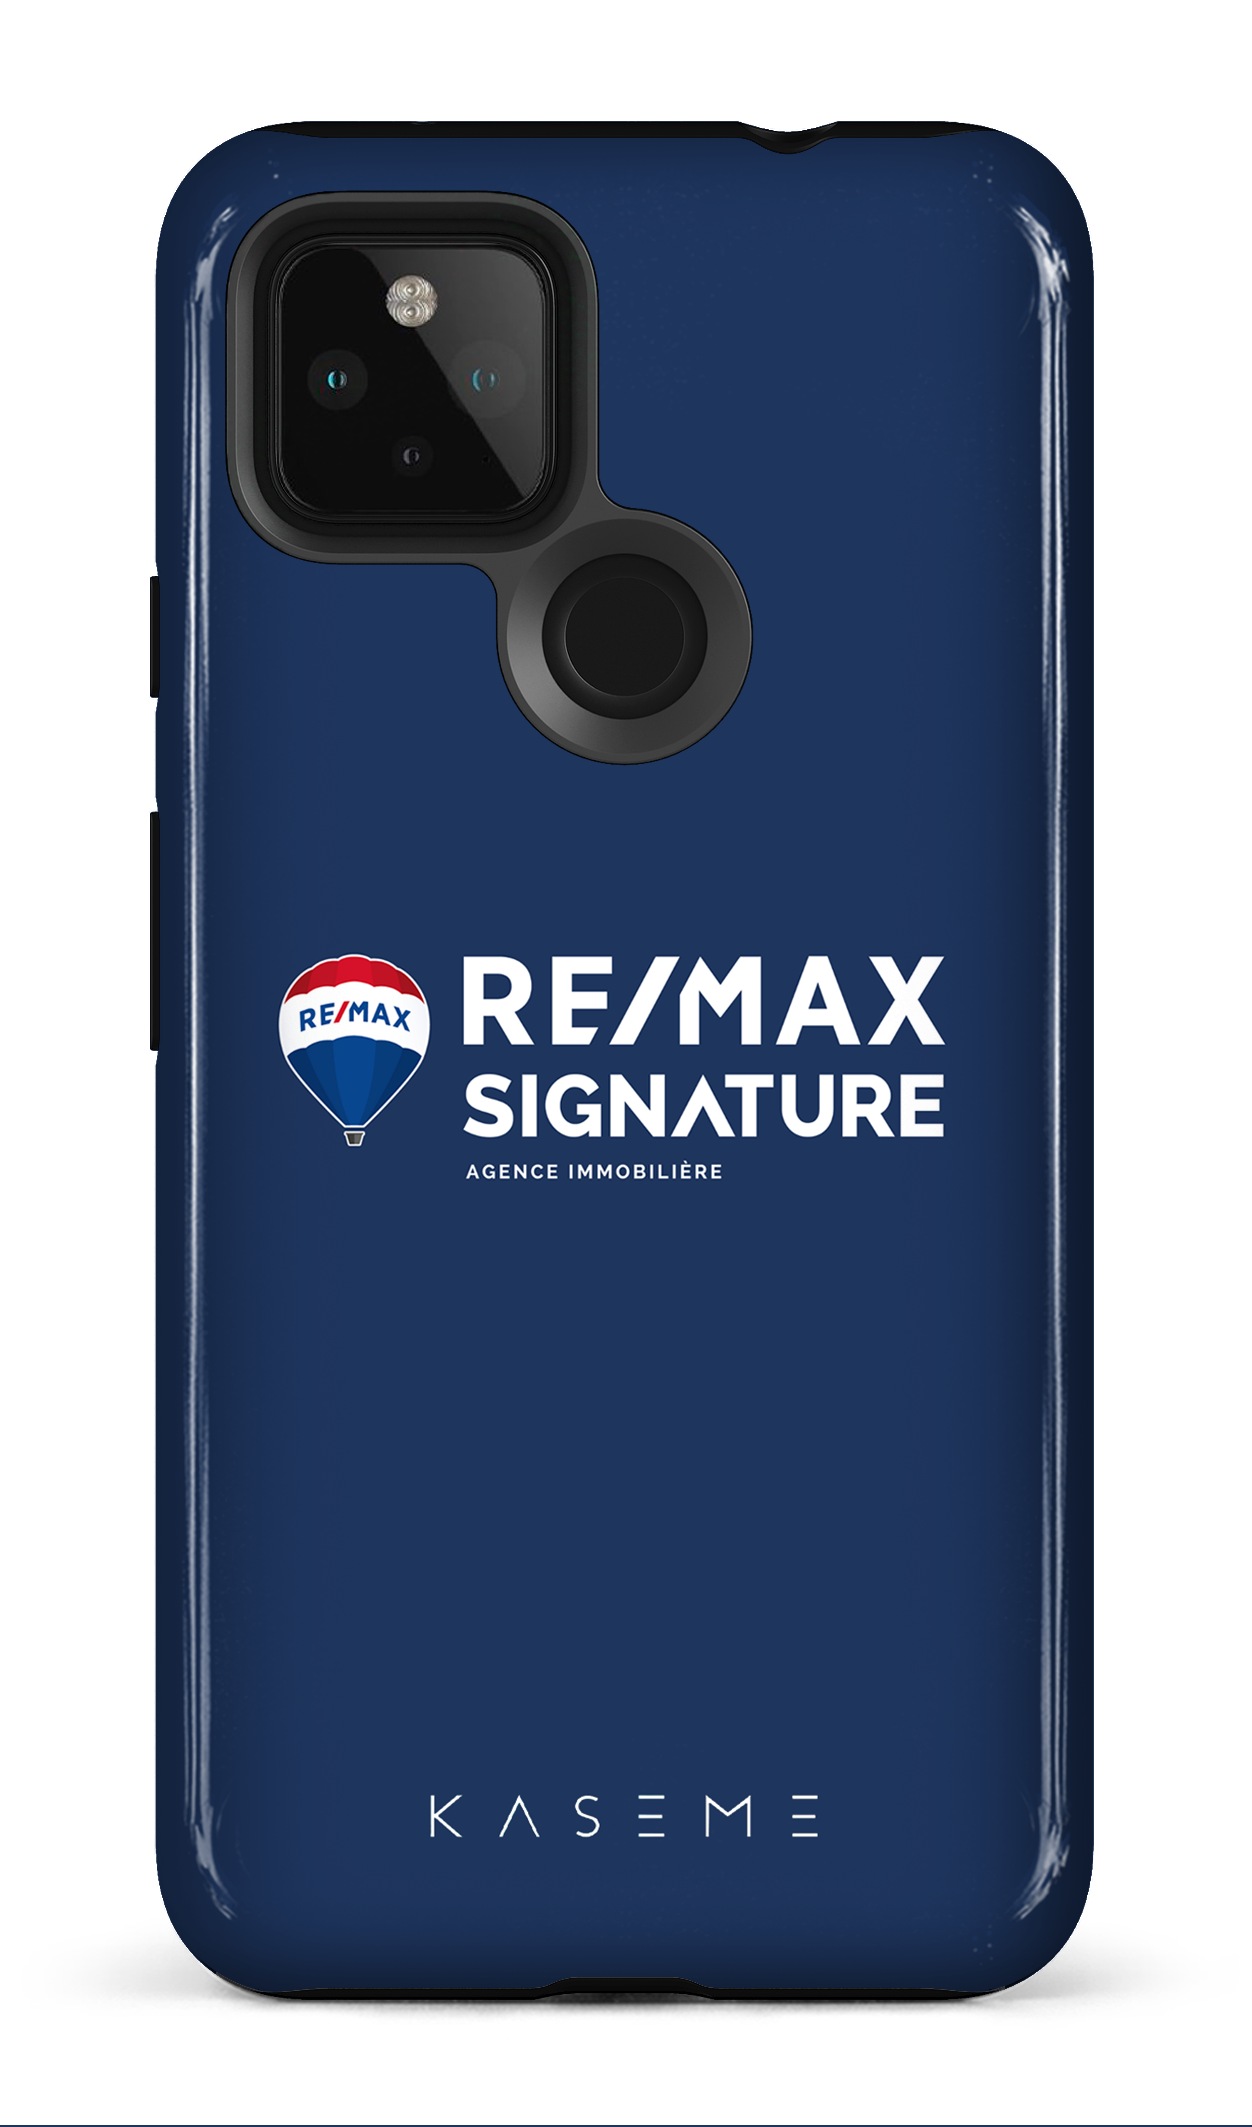 Remax Signature Bleu - Google Pixel 4A (5G)